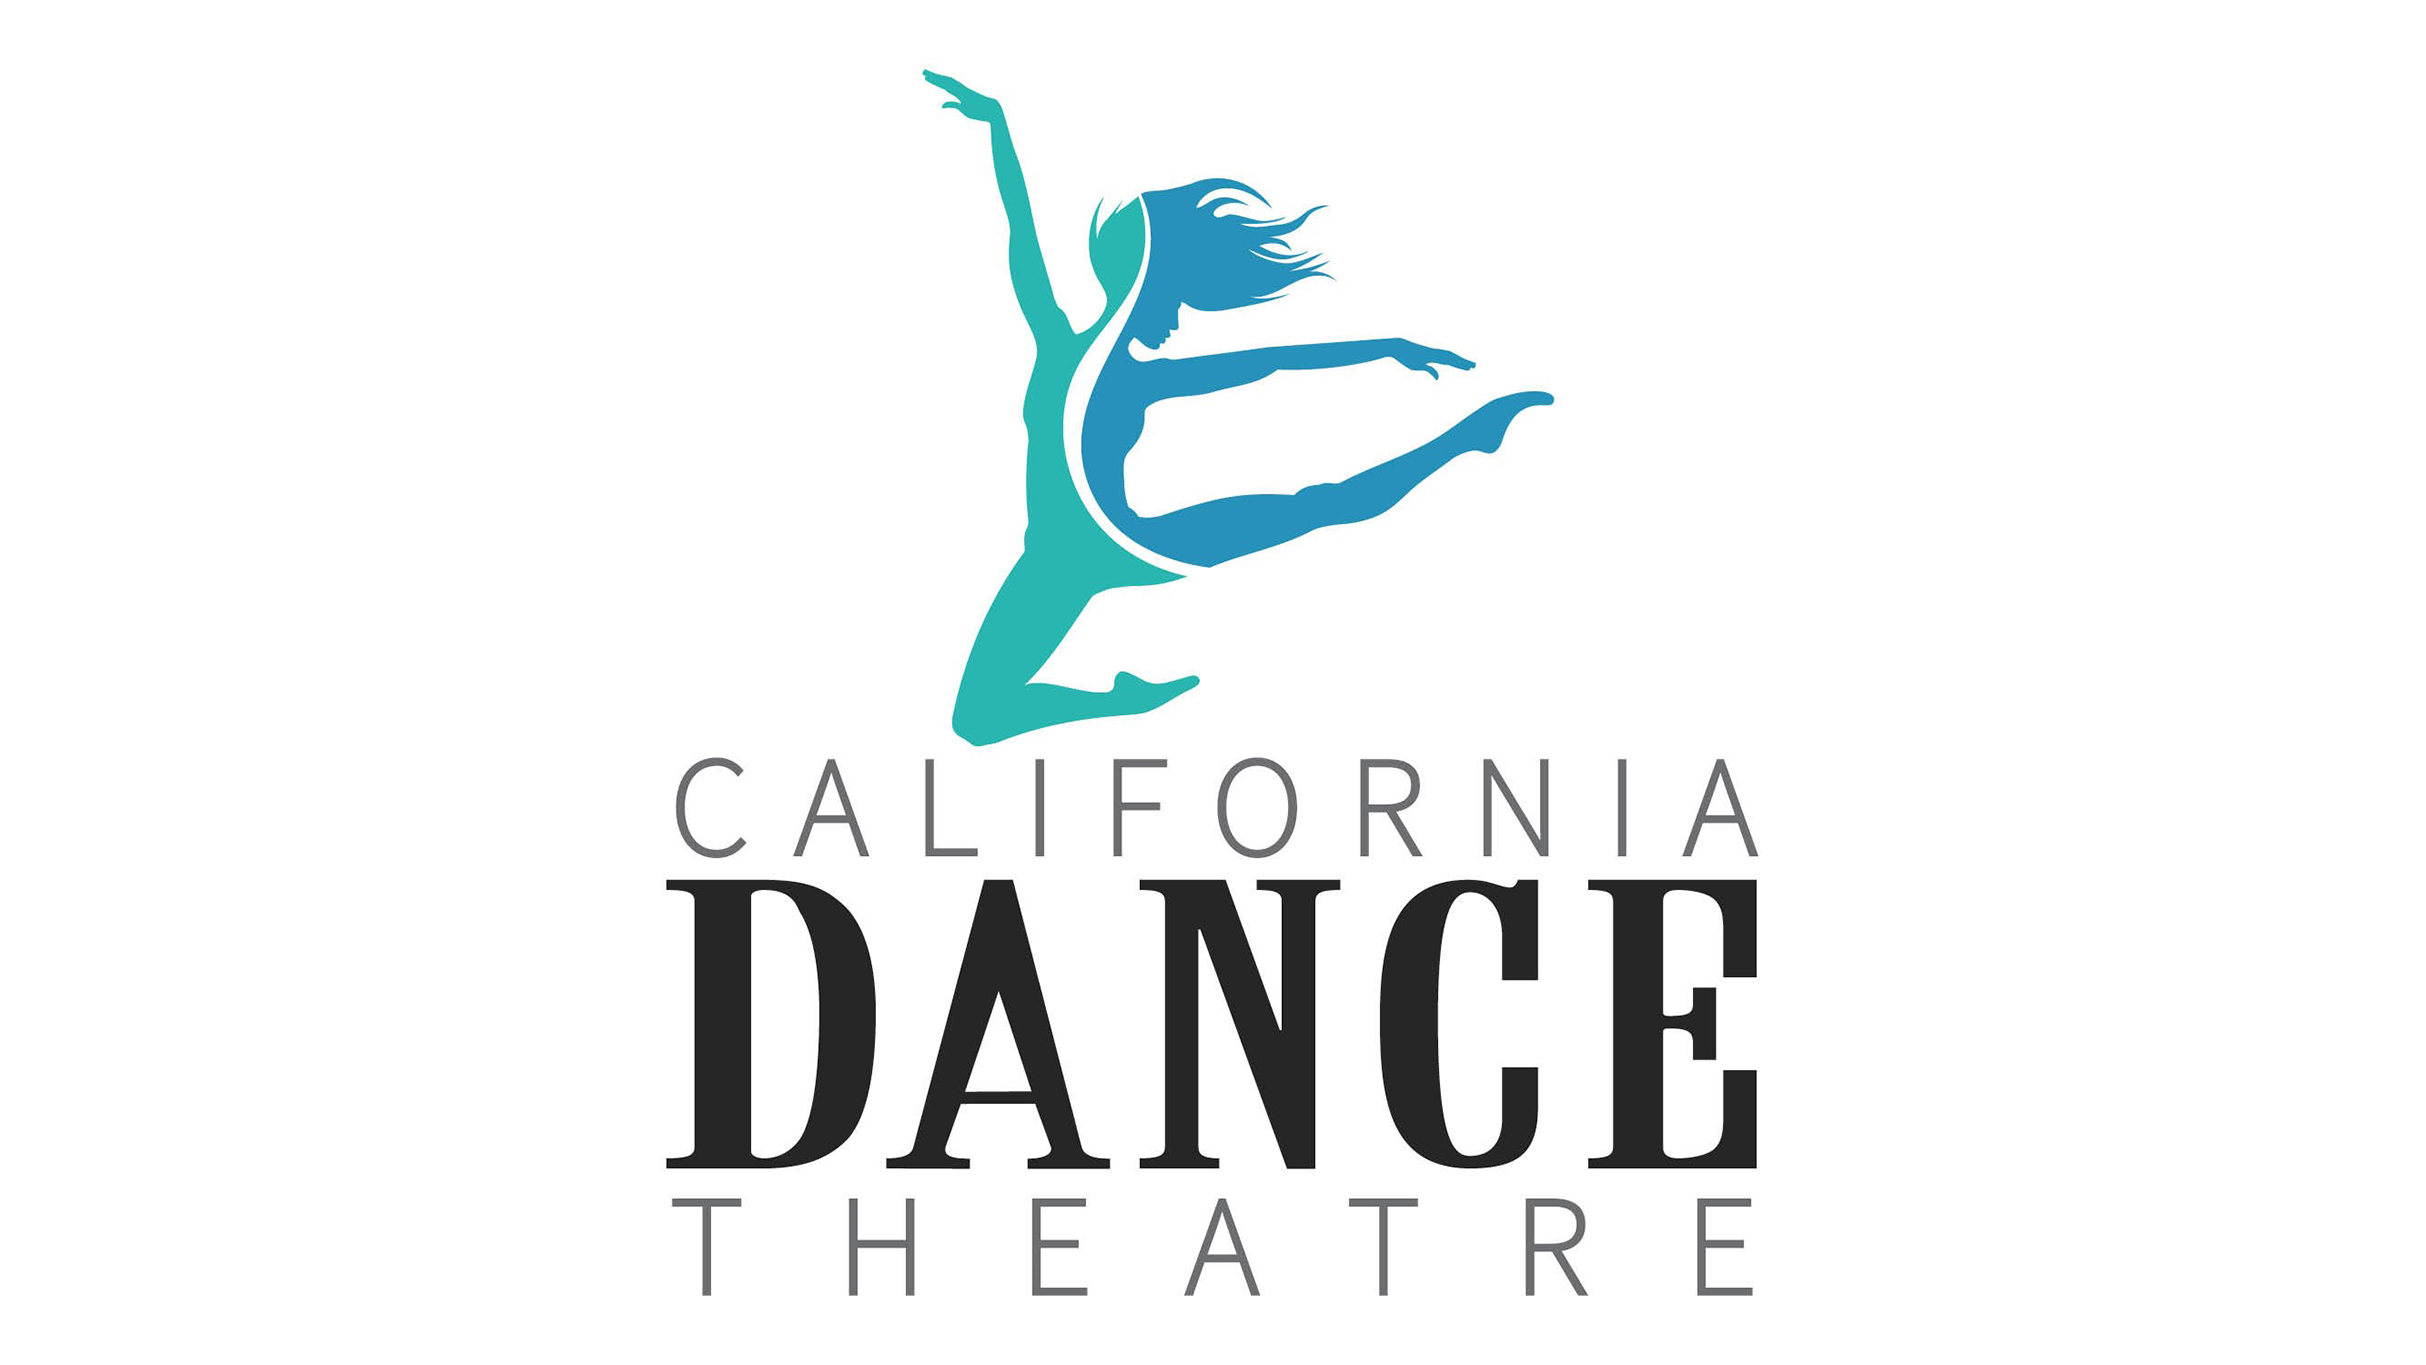 California Dance Theatre